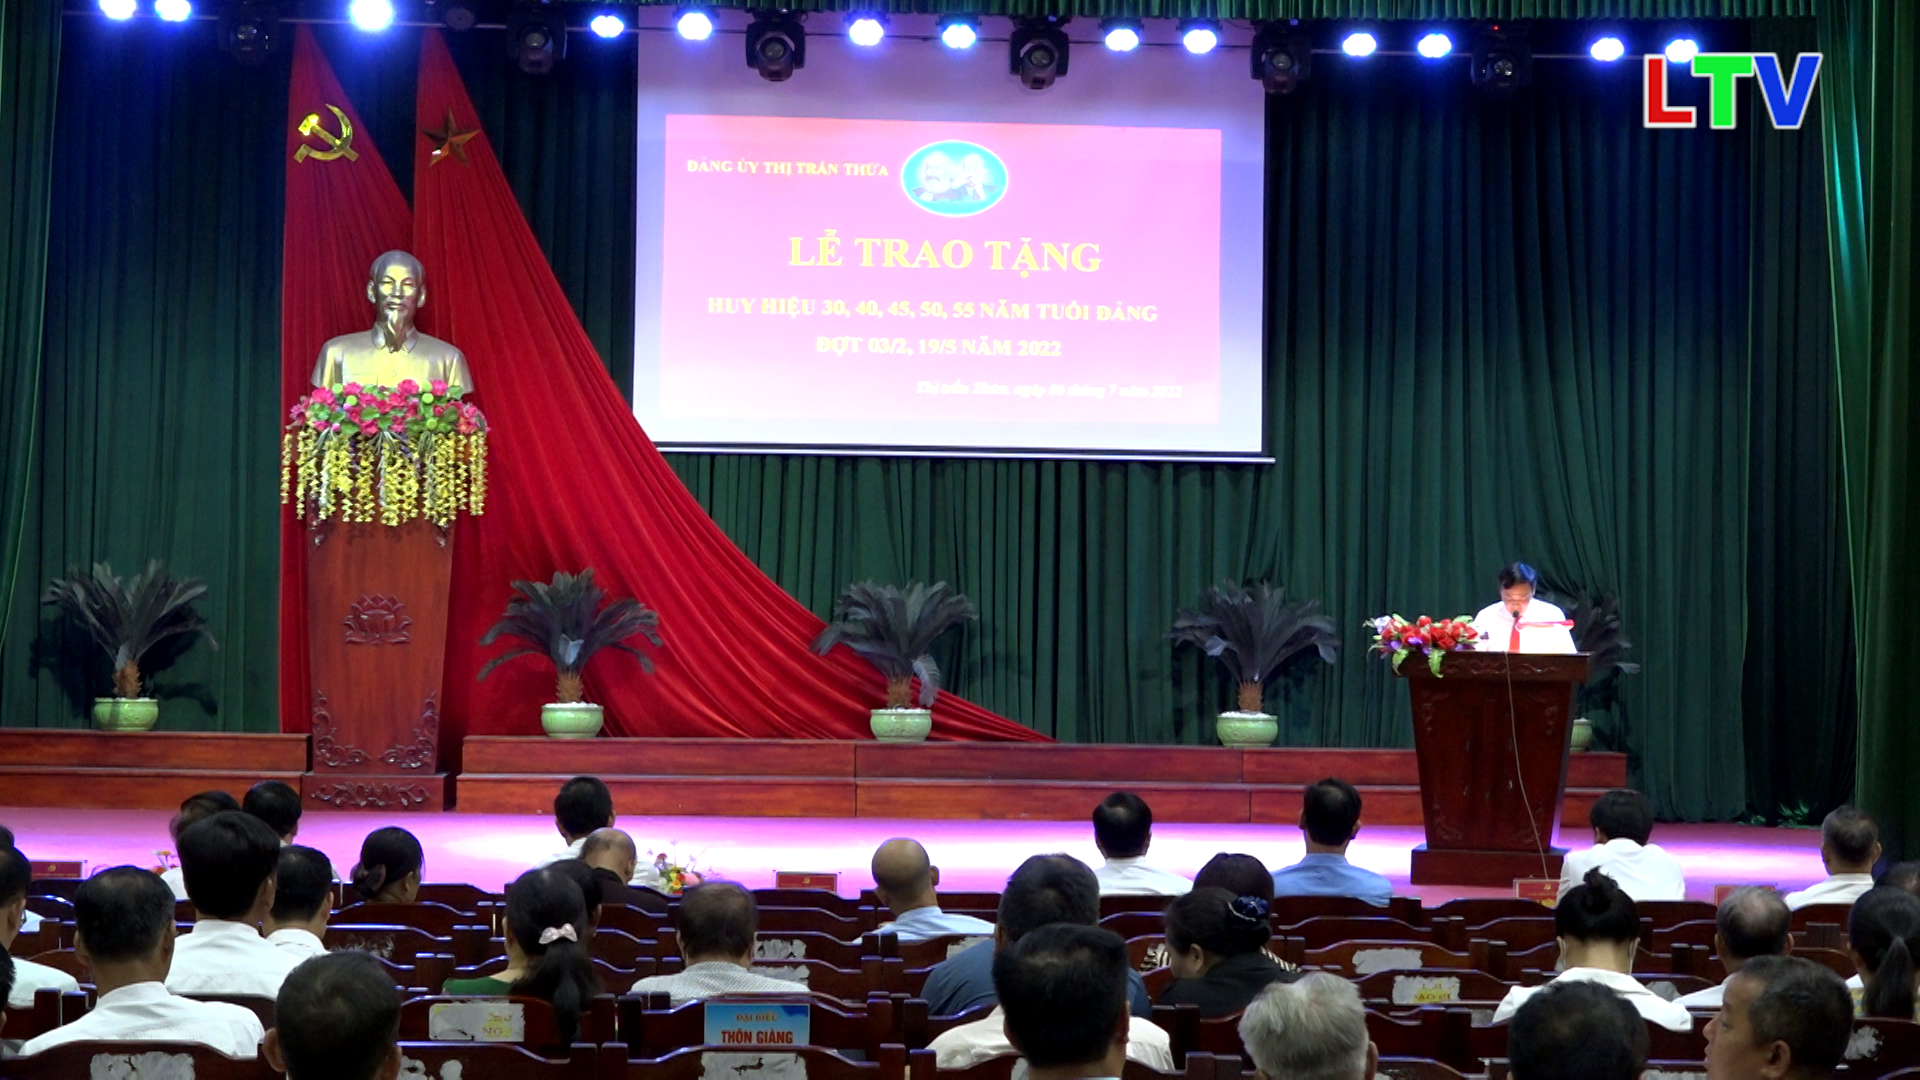 Thị trấn Thứa trao huy hiệu Đảng và sơ kết nhiệm vụ 6 tháng đầu năm 2022.mp4